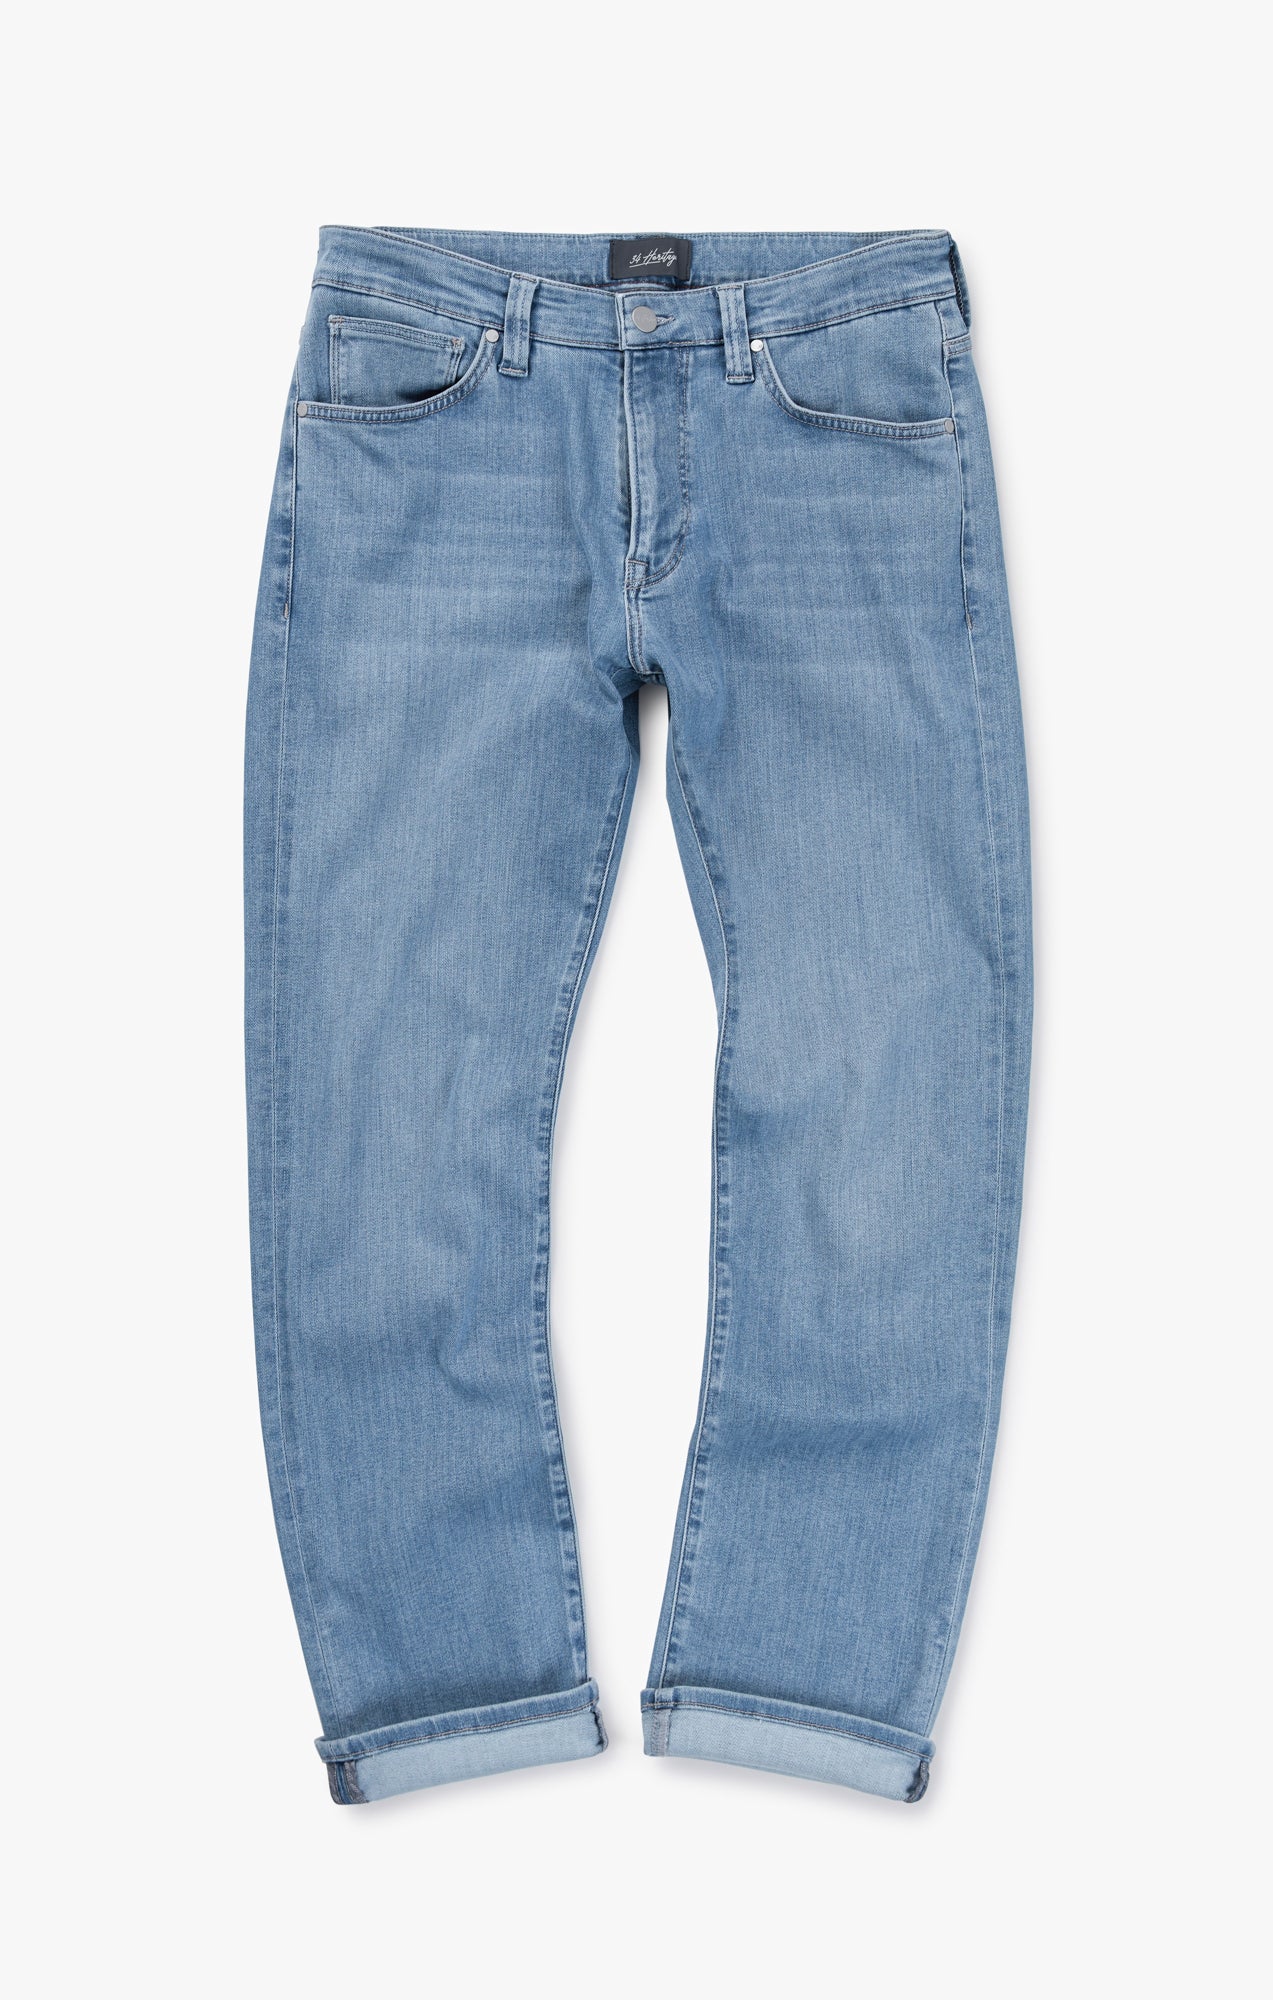 Men's Light-Wash Skinny Fit Denim Jeans